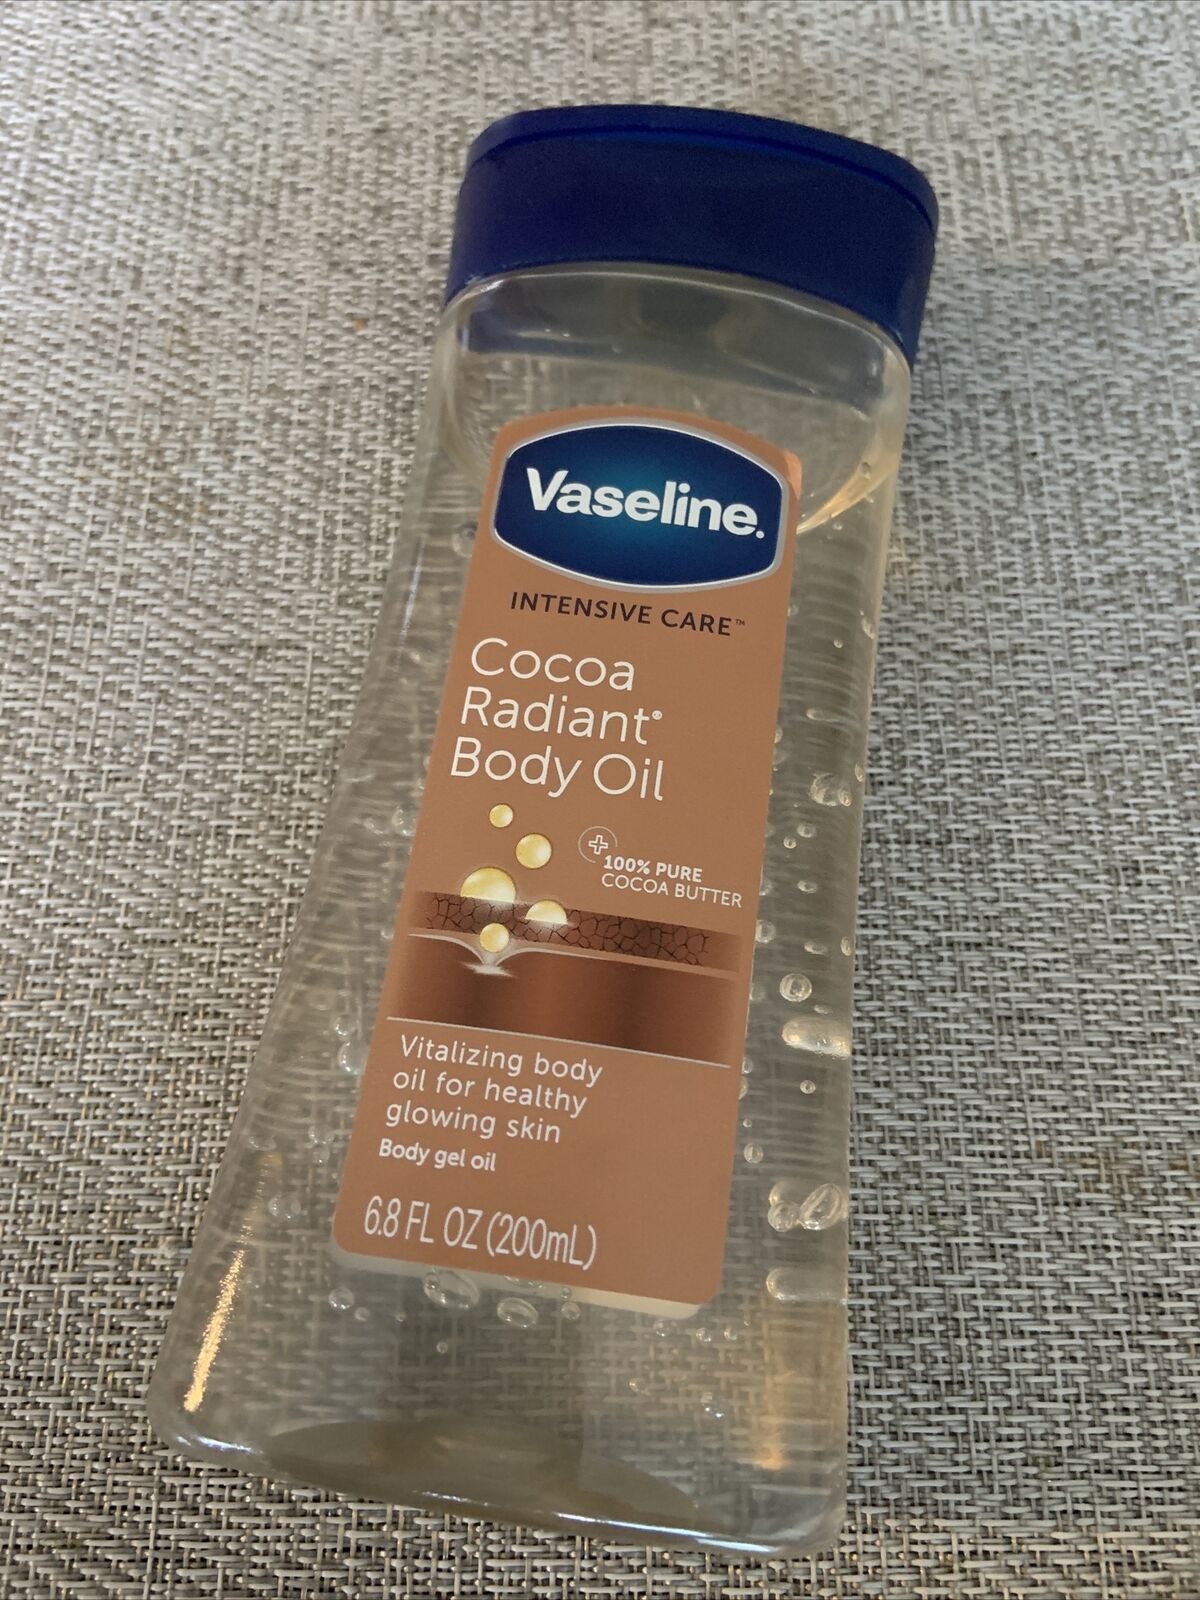 Vaseline Intensive Care Body Gel Oil, Cocoa Radiant, 6.8 oz